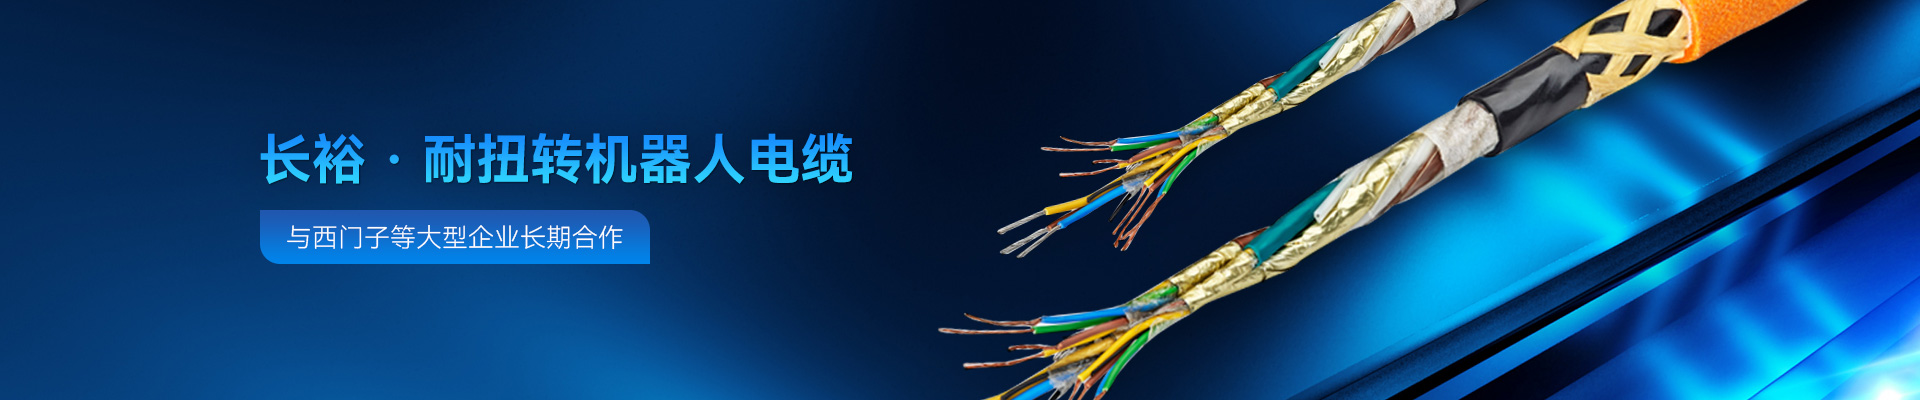 福彩3d开奖耐扭转机器人电缆与大型企业长期合作